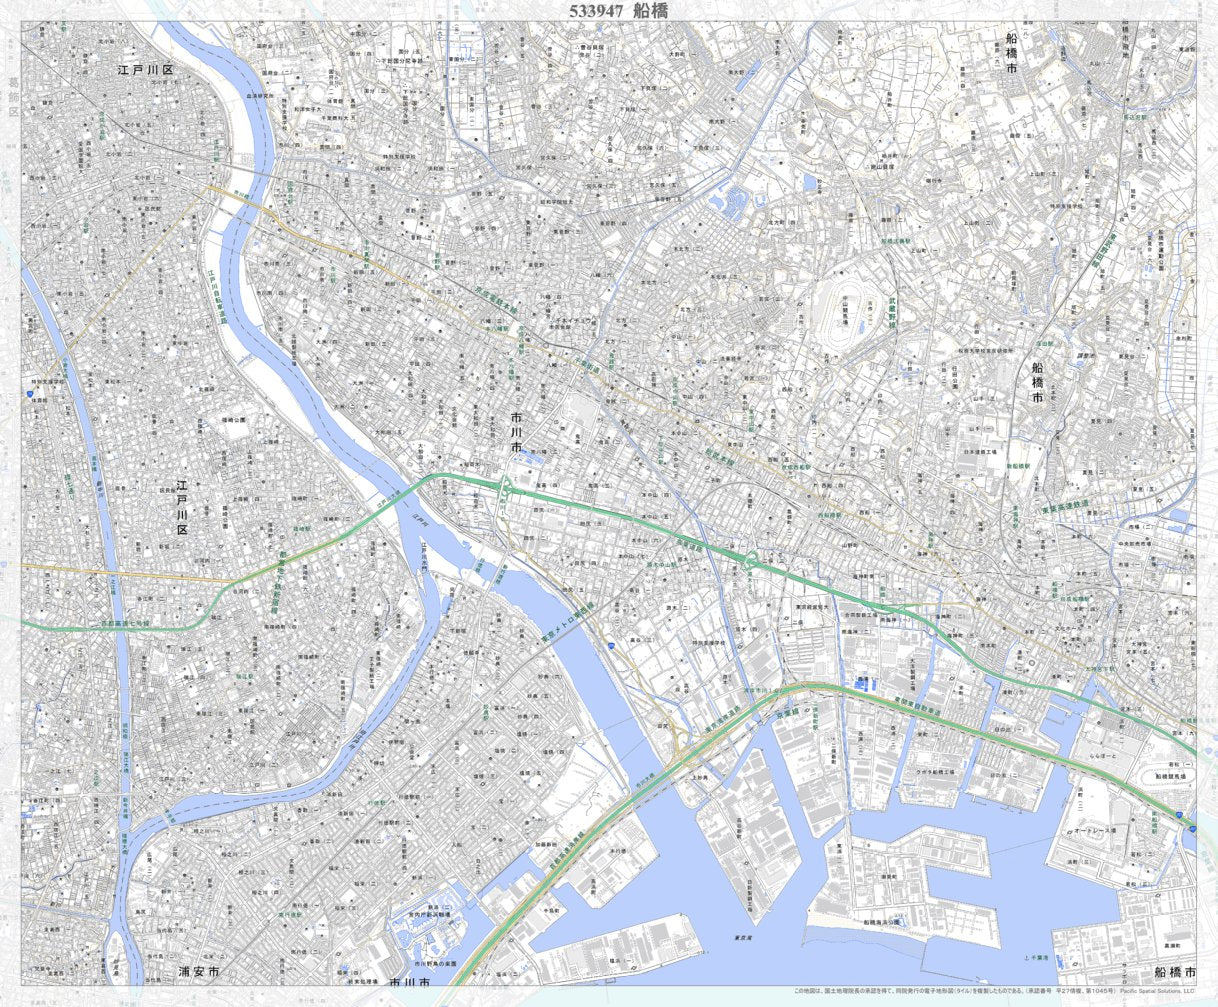 533947 船橋（ふなばし Funabashi）, 地形図 Map by Pacific Spatial 